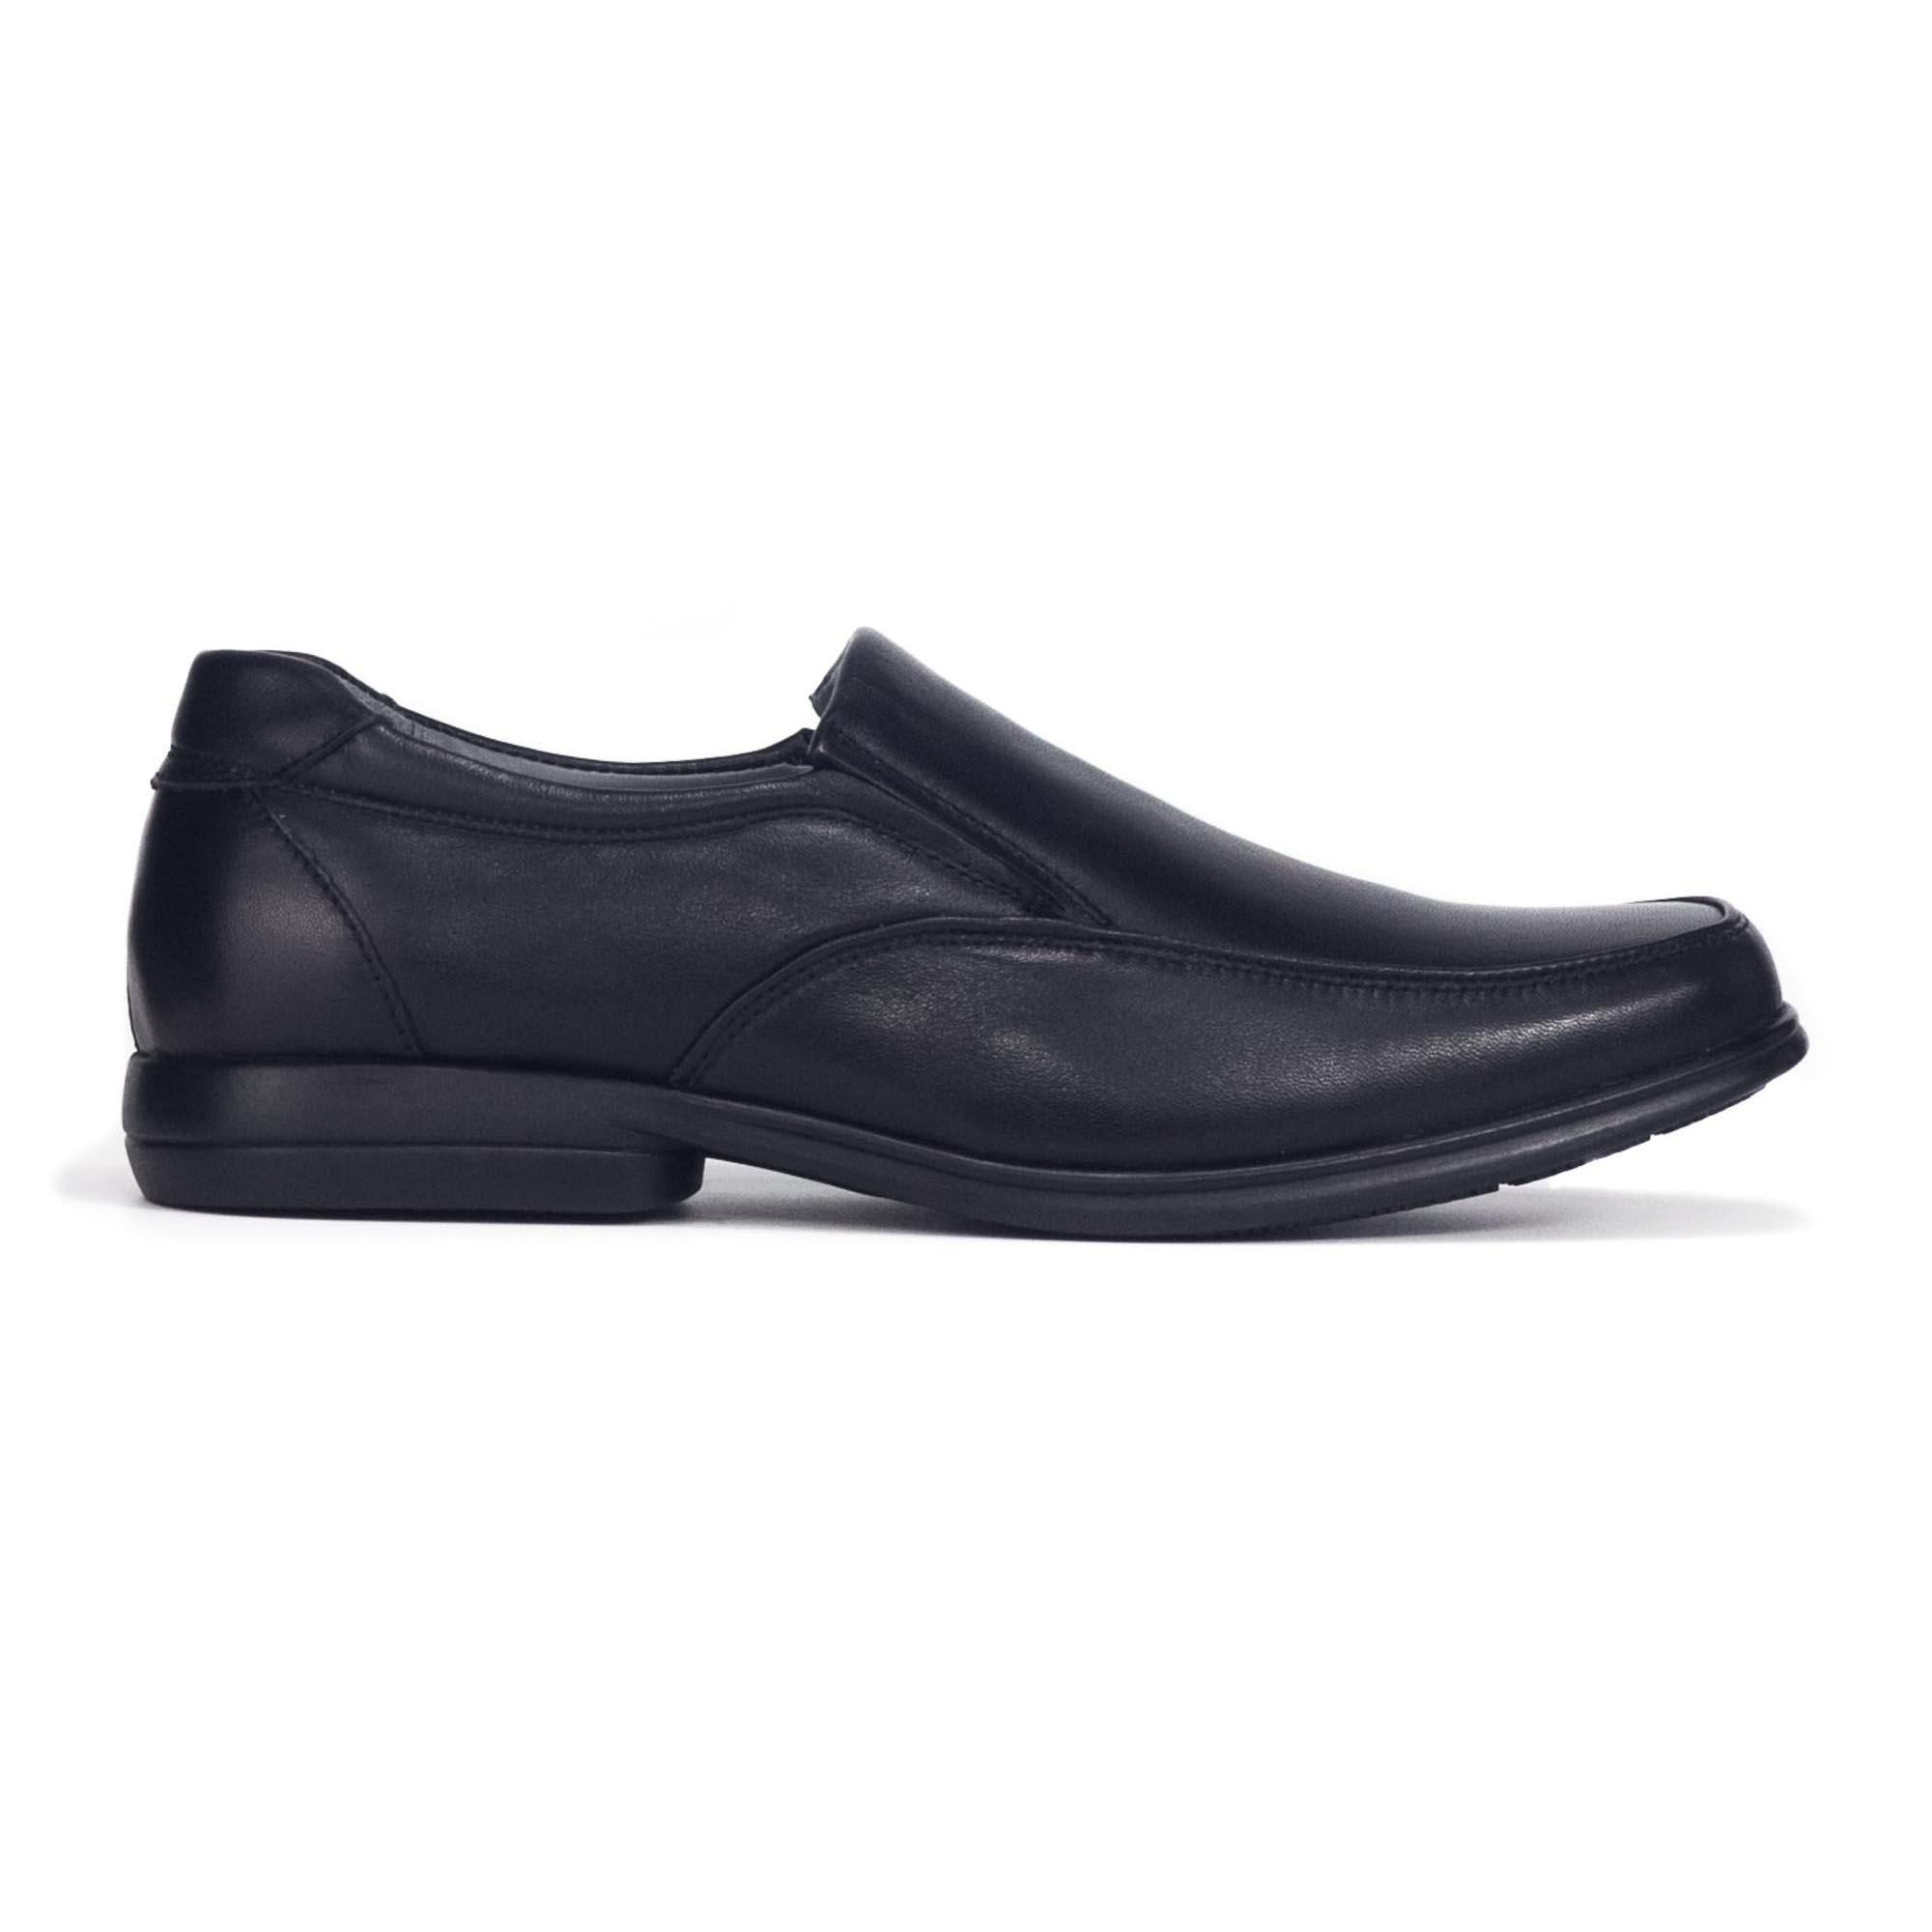 Buy Bata Formal Shoes Online | lazada.sg